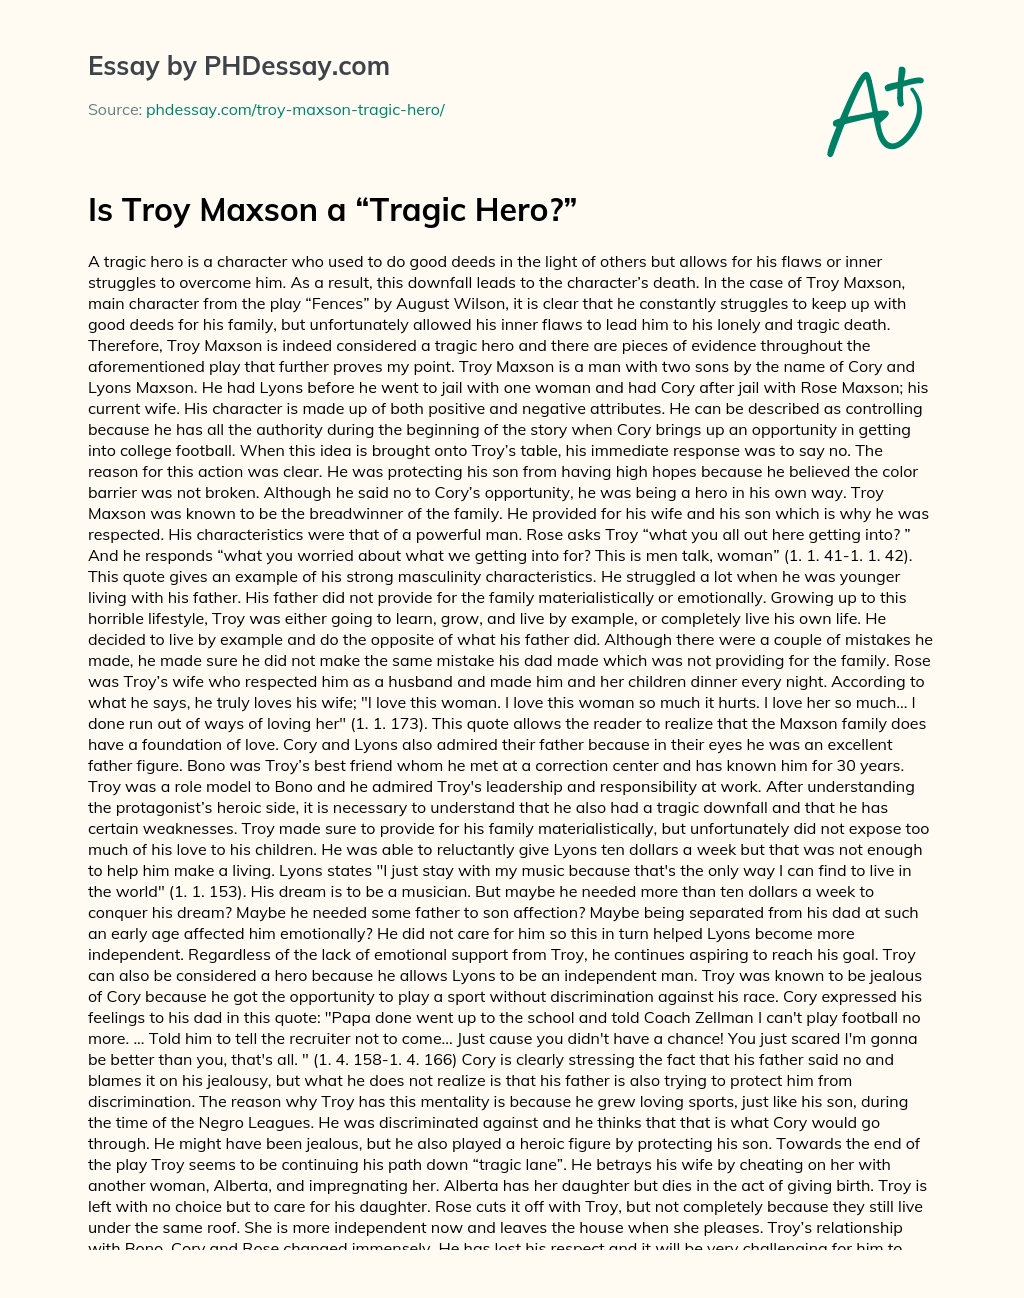 Is Troy Maxson a “Tragic Hero?” essay